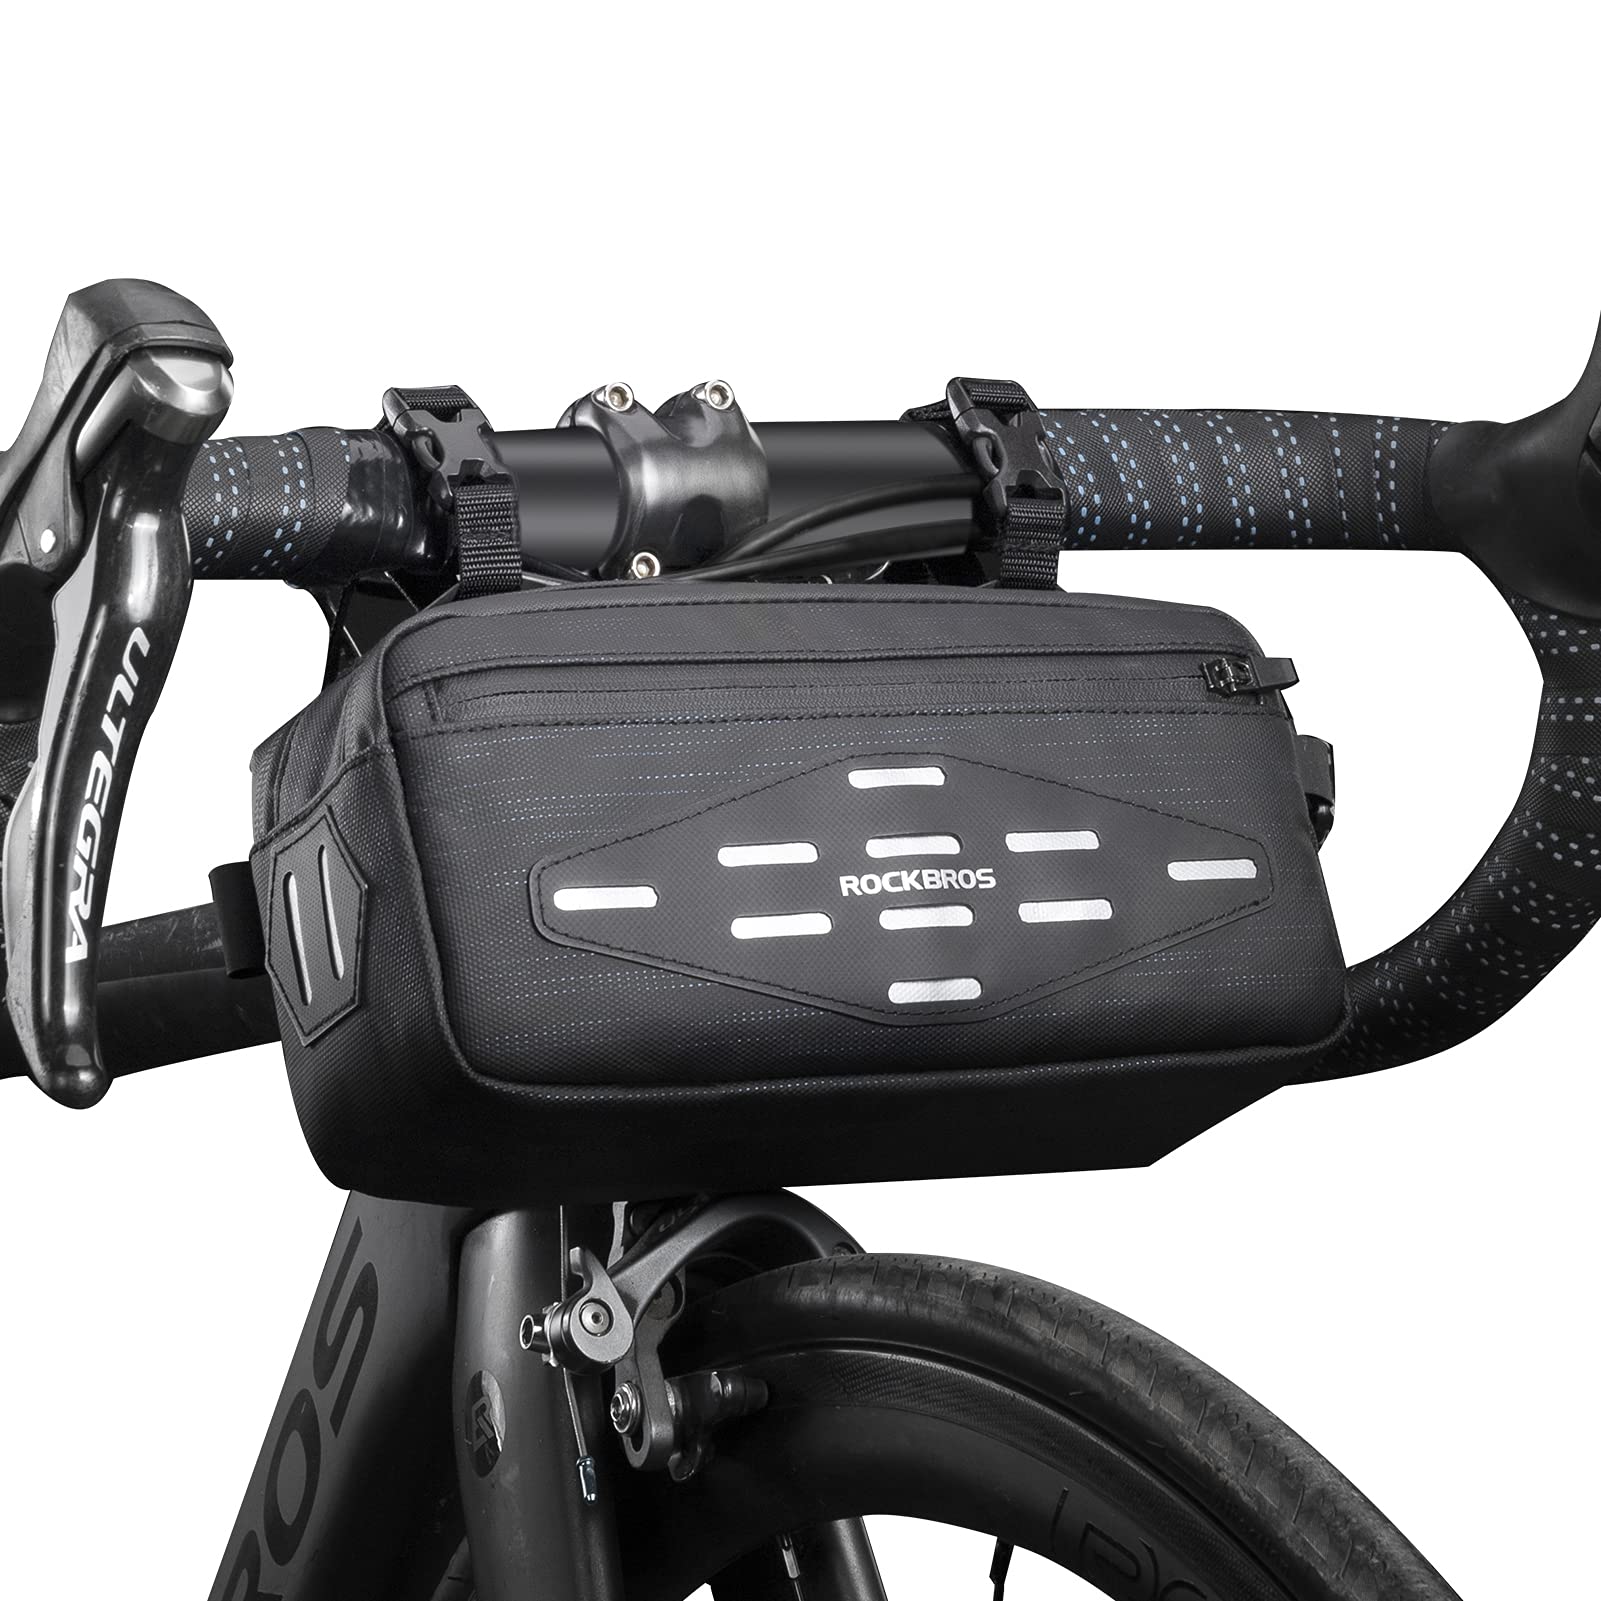 ROCKBROS Lenkertsche Fahrrad 2L, Multifunktionale Fahrradtasche - als Rahmentasche/Satteltasche/Umhängetasche für Fahrräder, Ebikes, Faltrad, E-Scooter von ROCKBROS